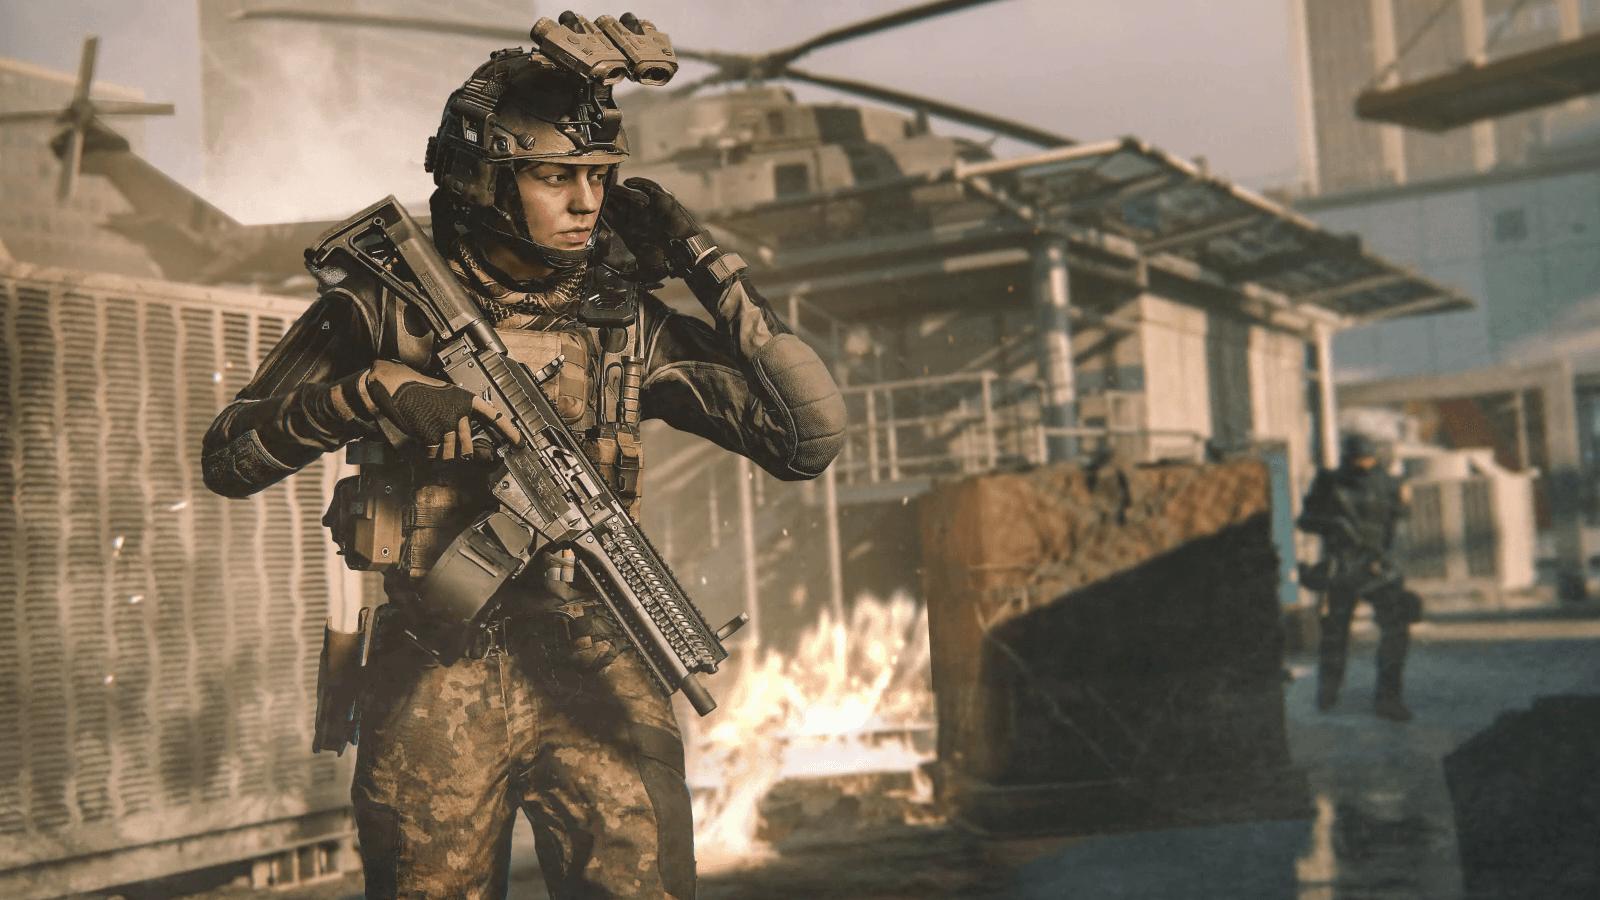 MW3 Prestige system explained – how to Prestige in Modern Warfare 3